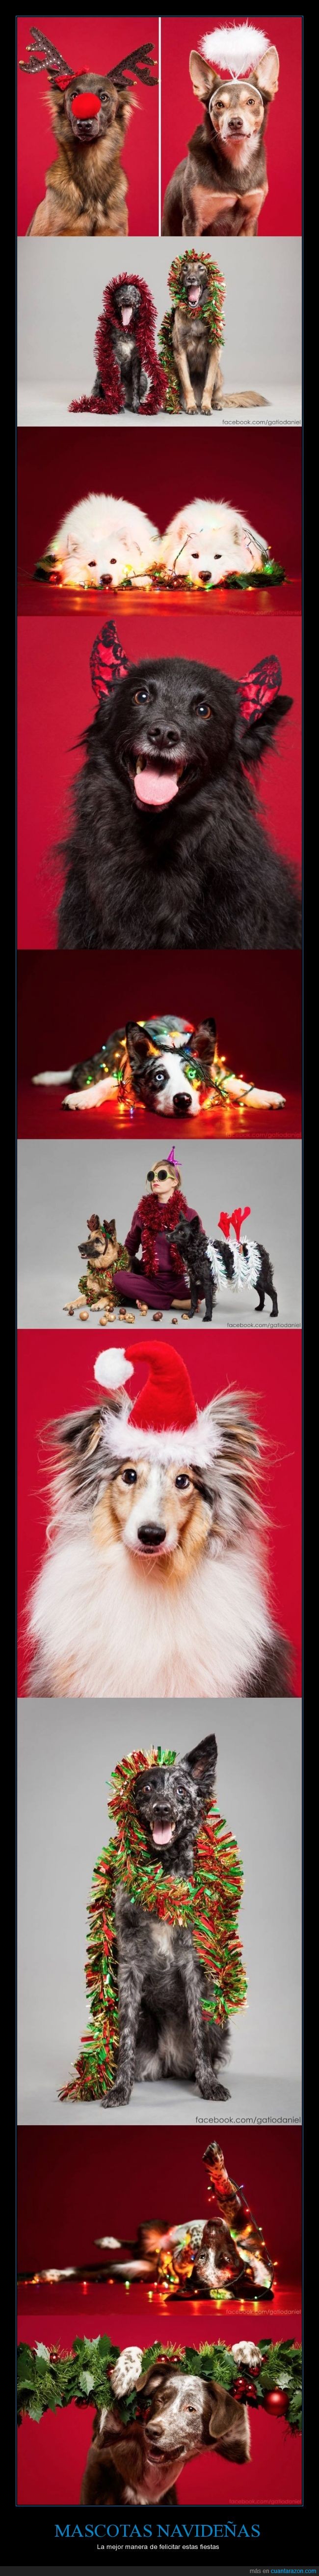 perro,gato,mascota,disfraz,navidad,navideño